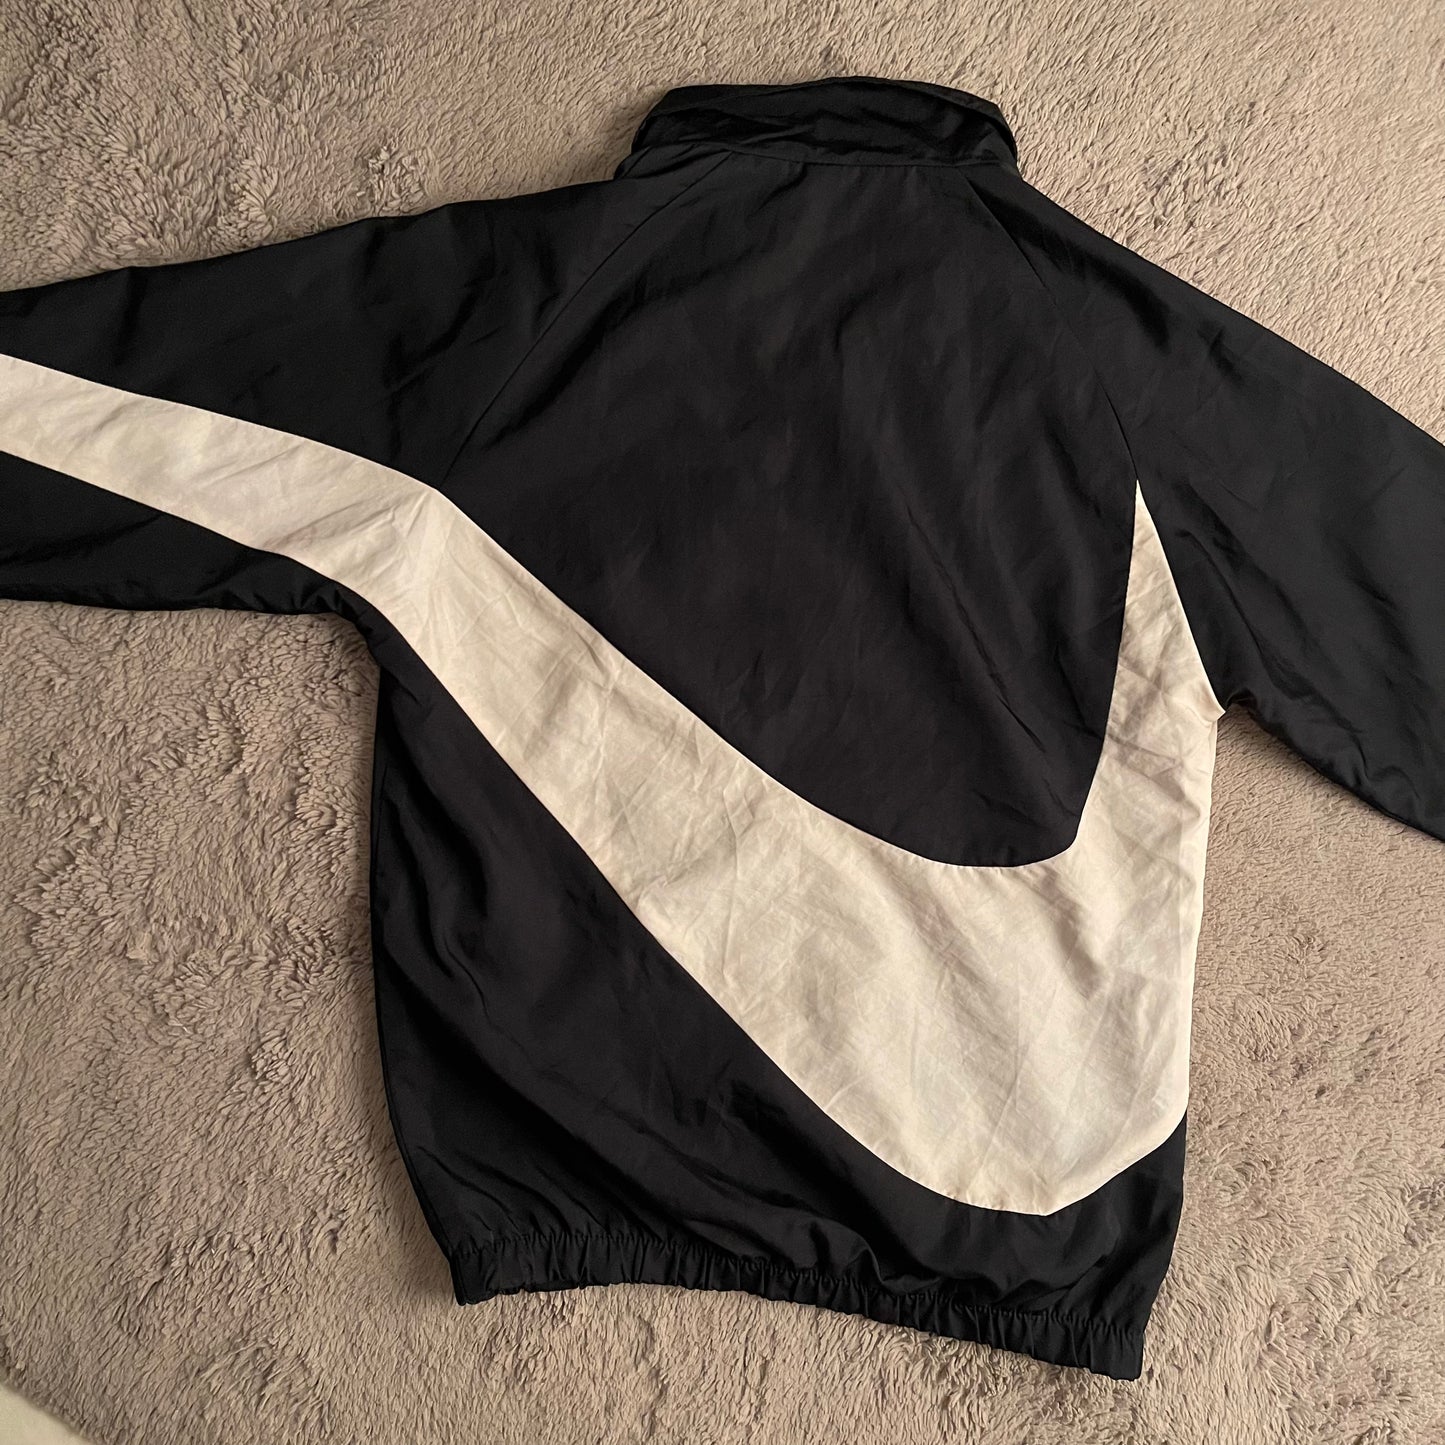 Nike Big Swoosh Windbreaker Jacket (L)